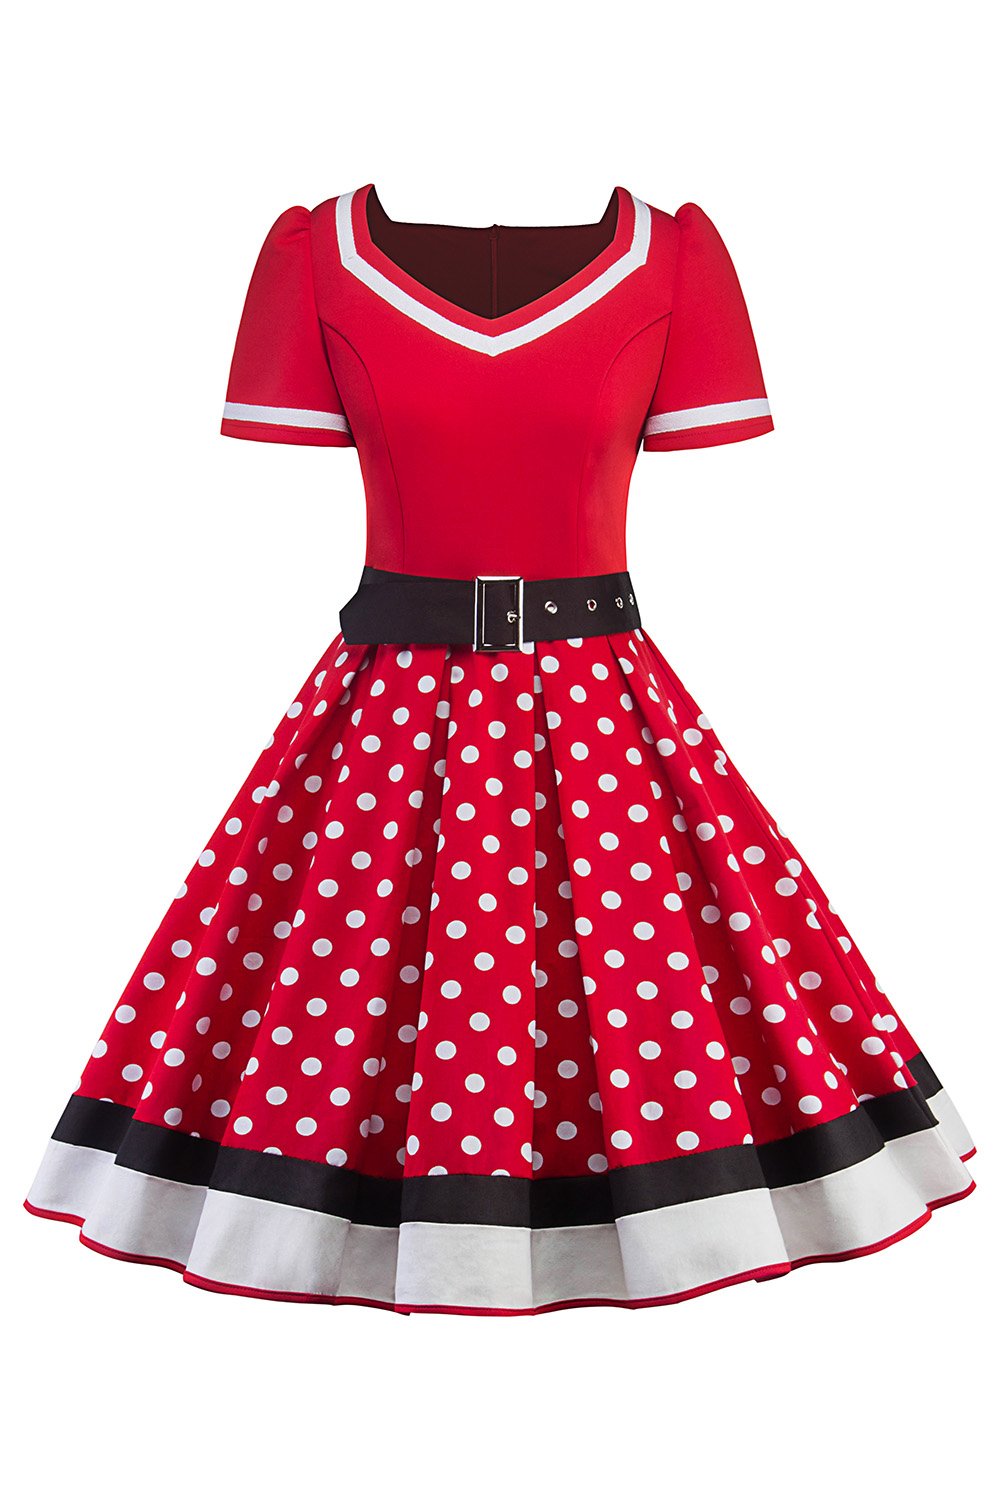 MisShow Damen elegant 50er Jahre Petticoat Kleider Gepunkte Rockabilly Kleider Cocktailkleider, Rot, M